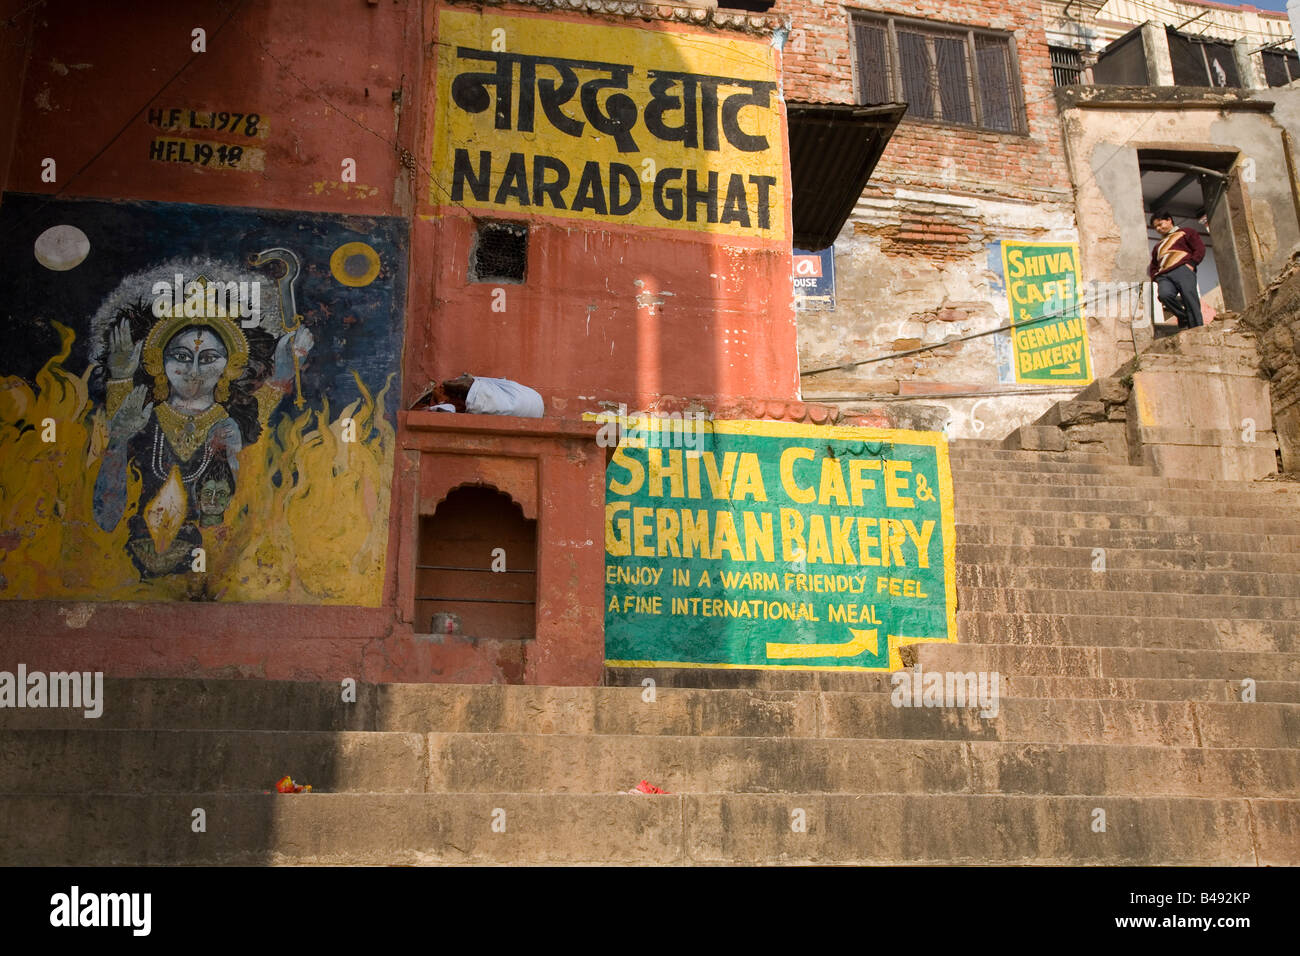 Schritte bei der Narad Ghat in der Stadt von Varanasi, Indien. Werbung und ein religiöses Bild gemalt an den Wänden zu sehen. Stockfoto